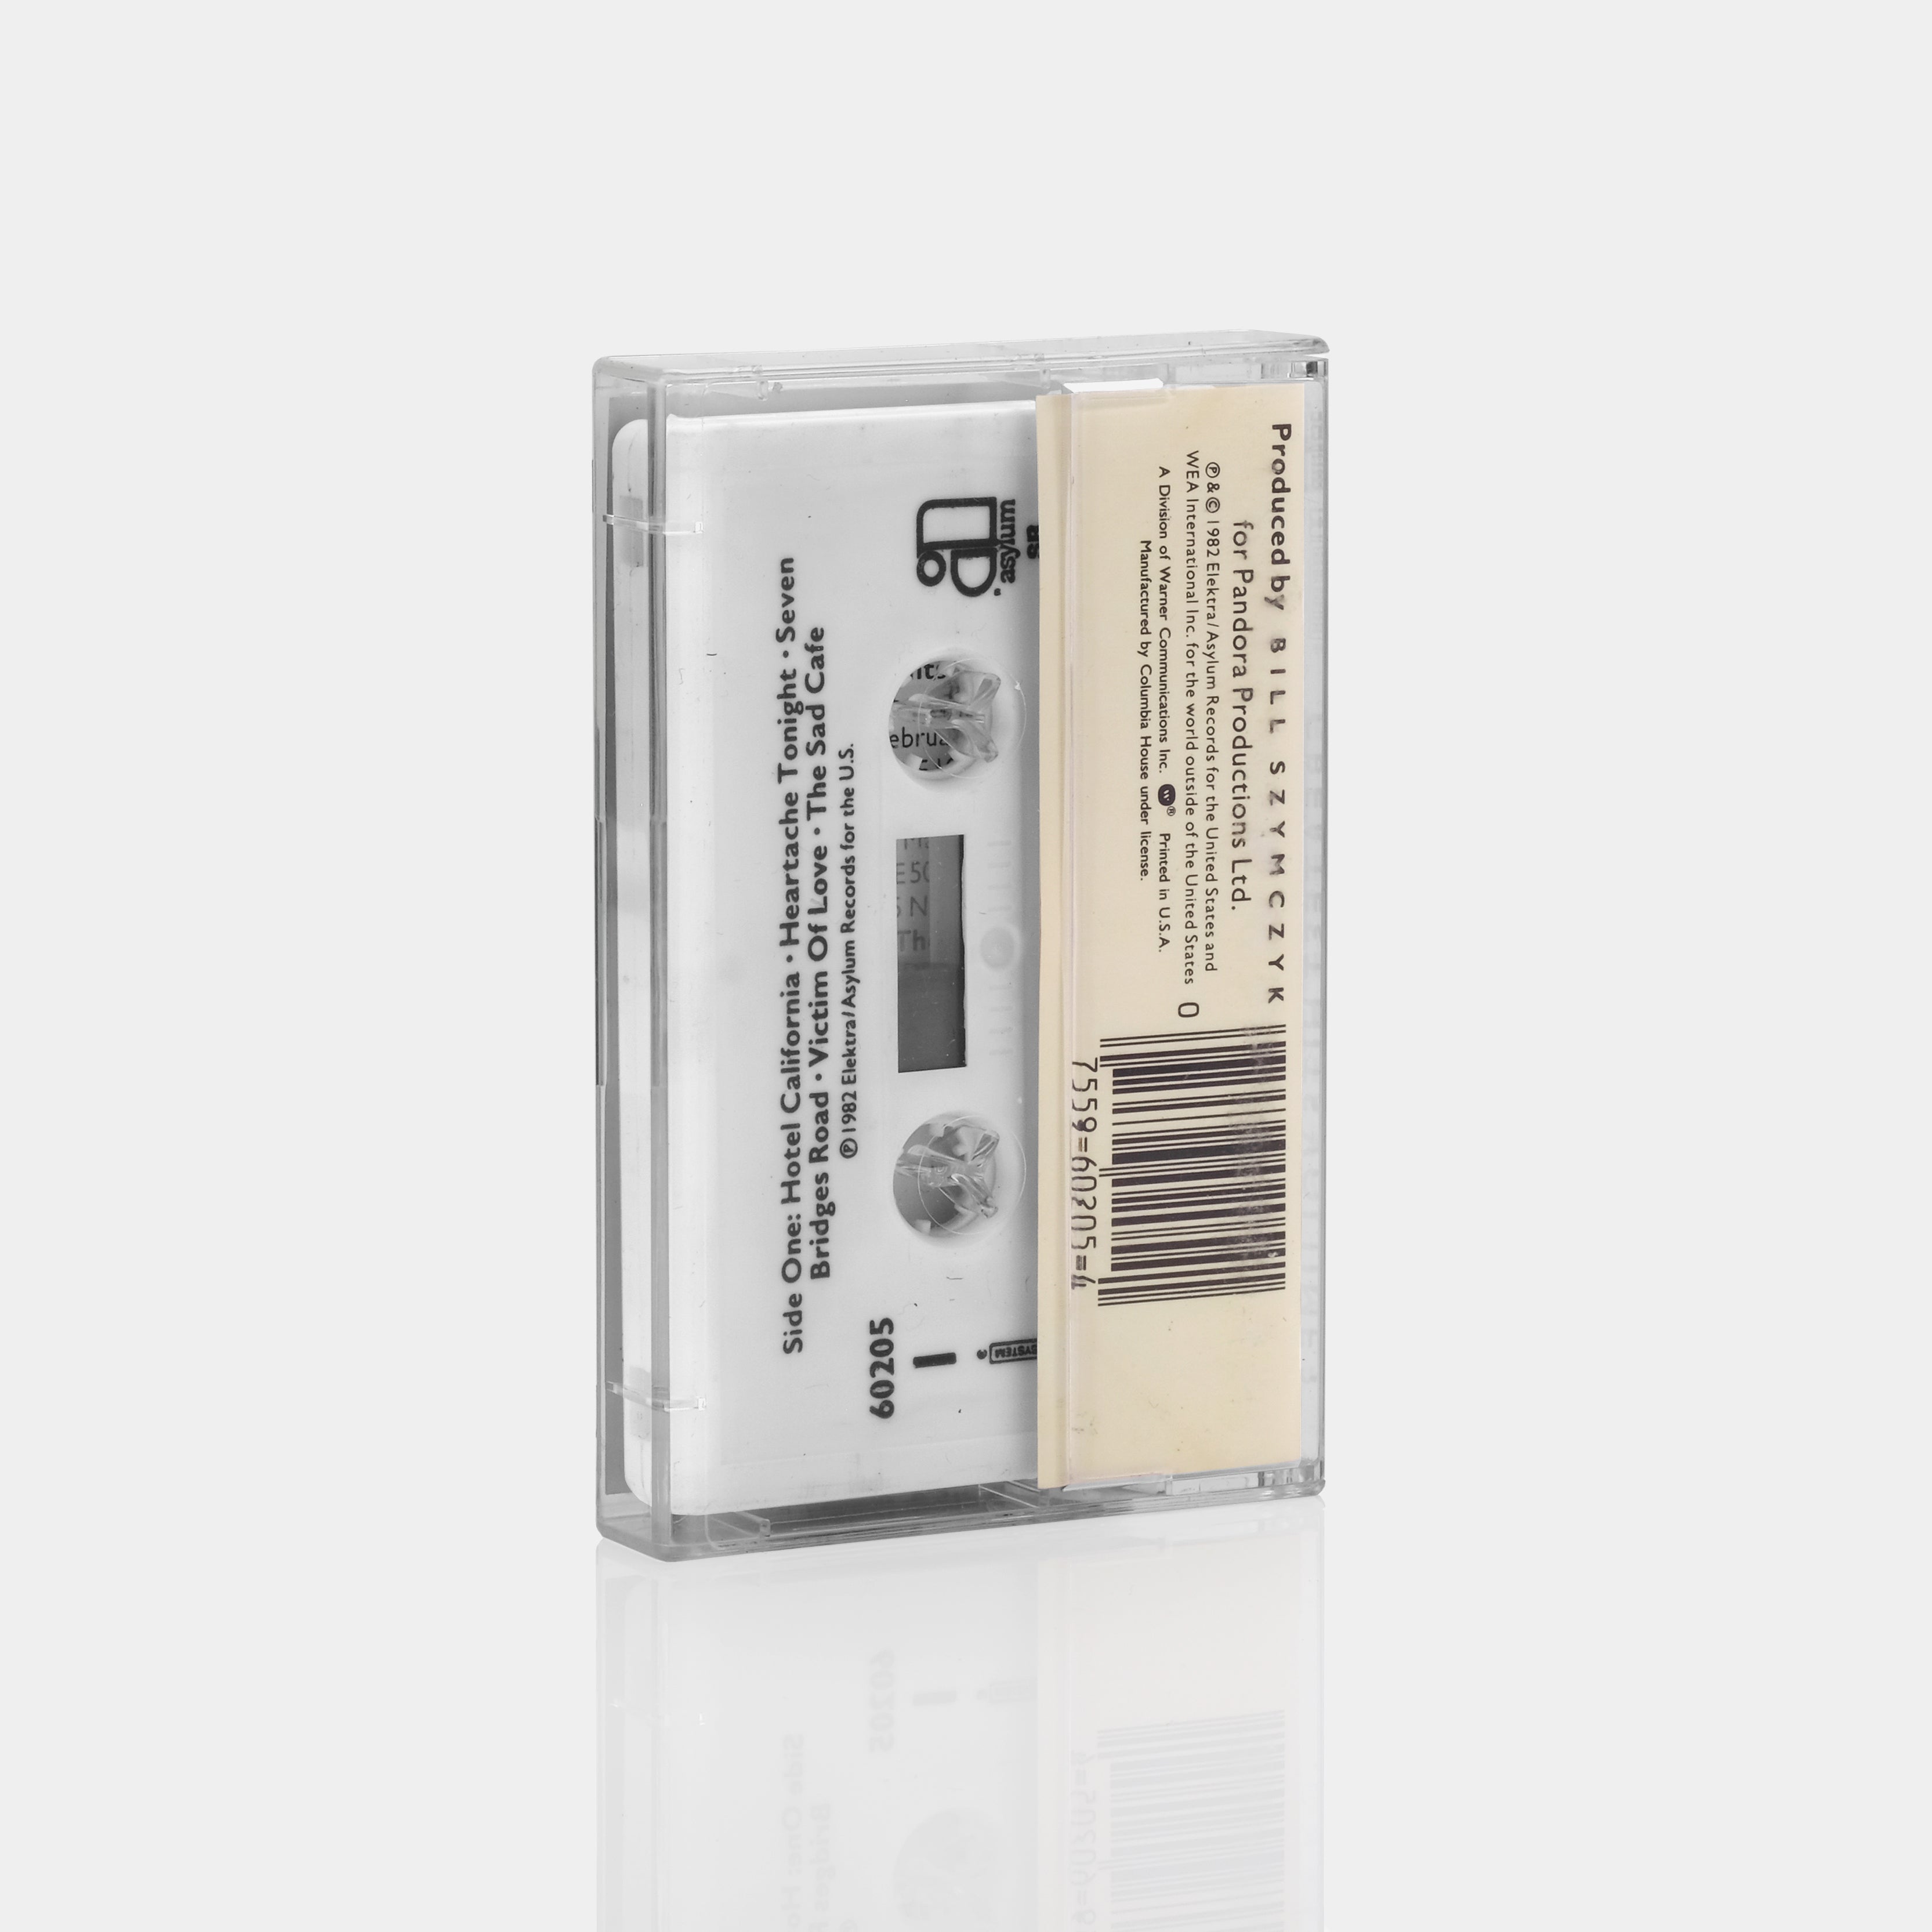 Eagles - Greatest Hits Volume 2 Cassette Tape